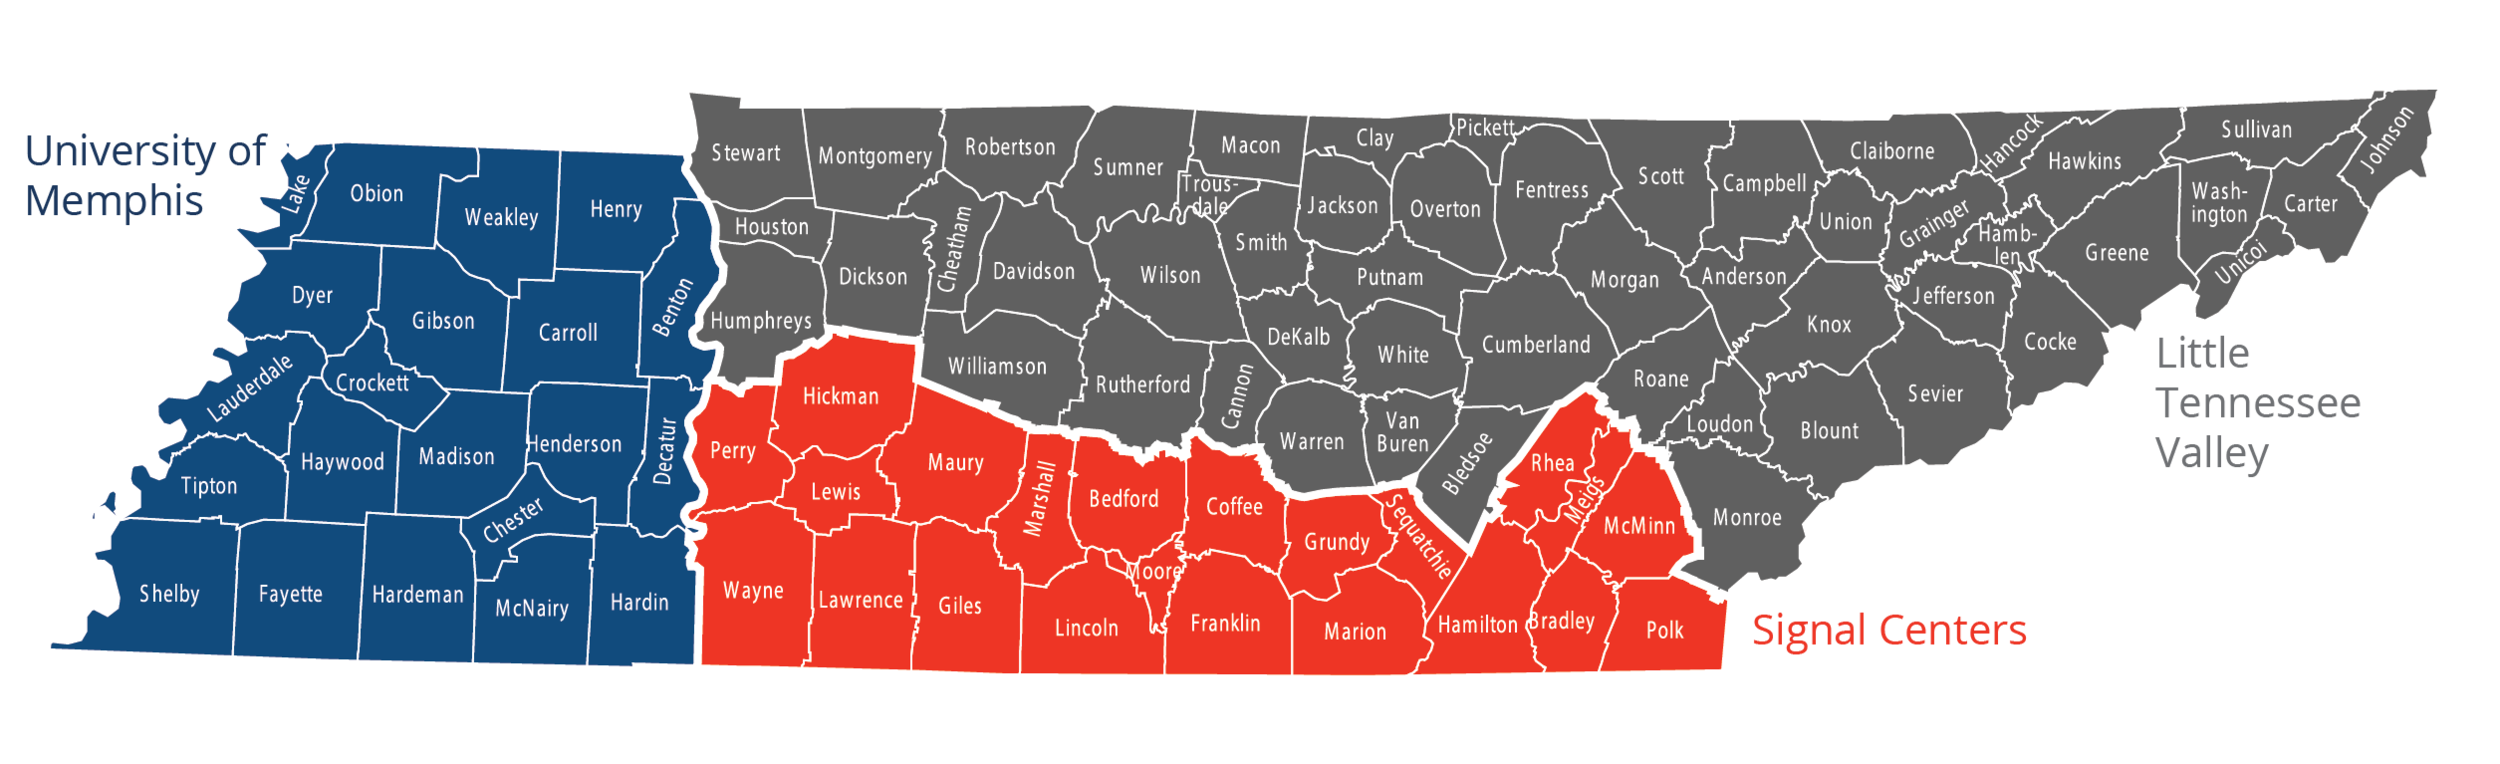 Tennessee Talks three Regions